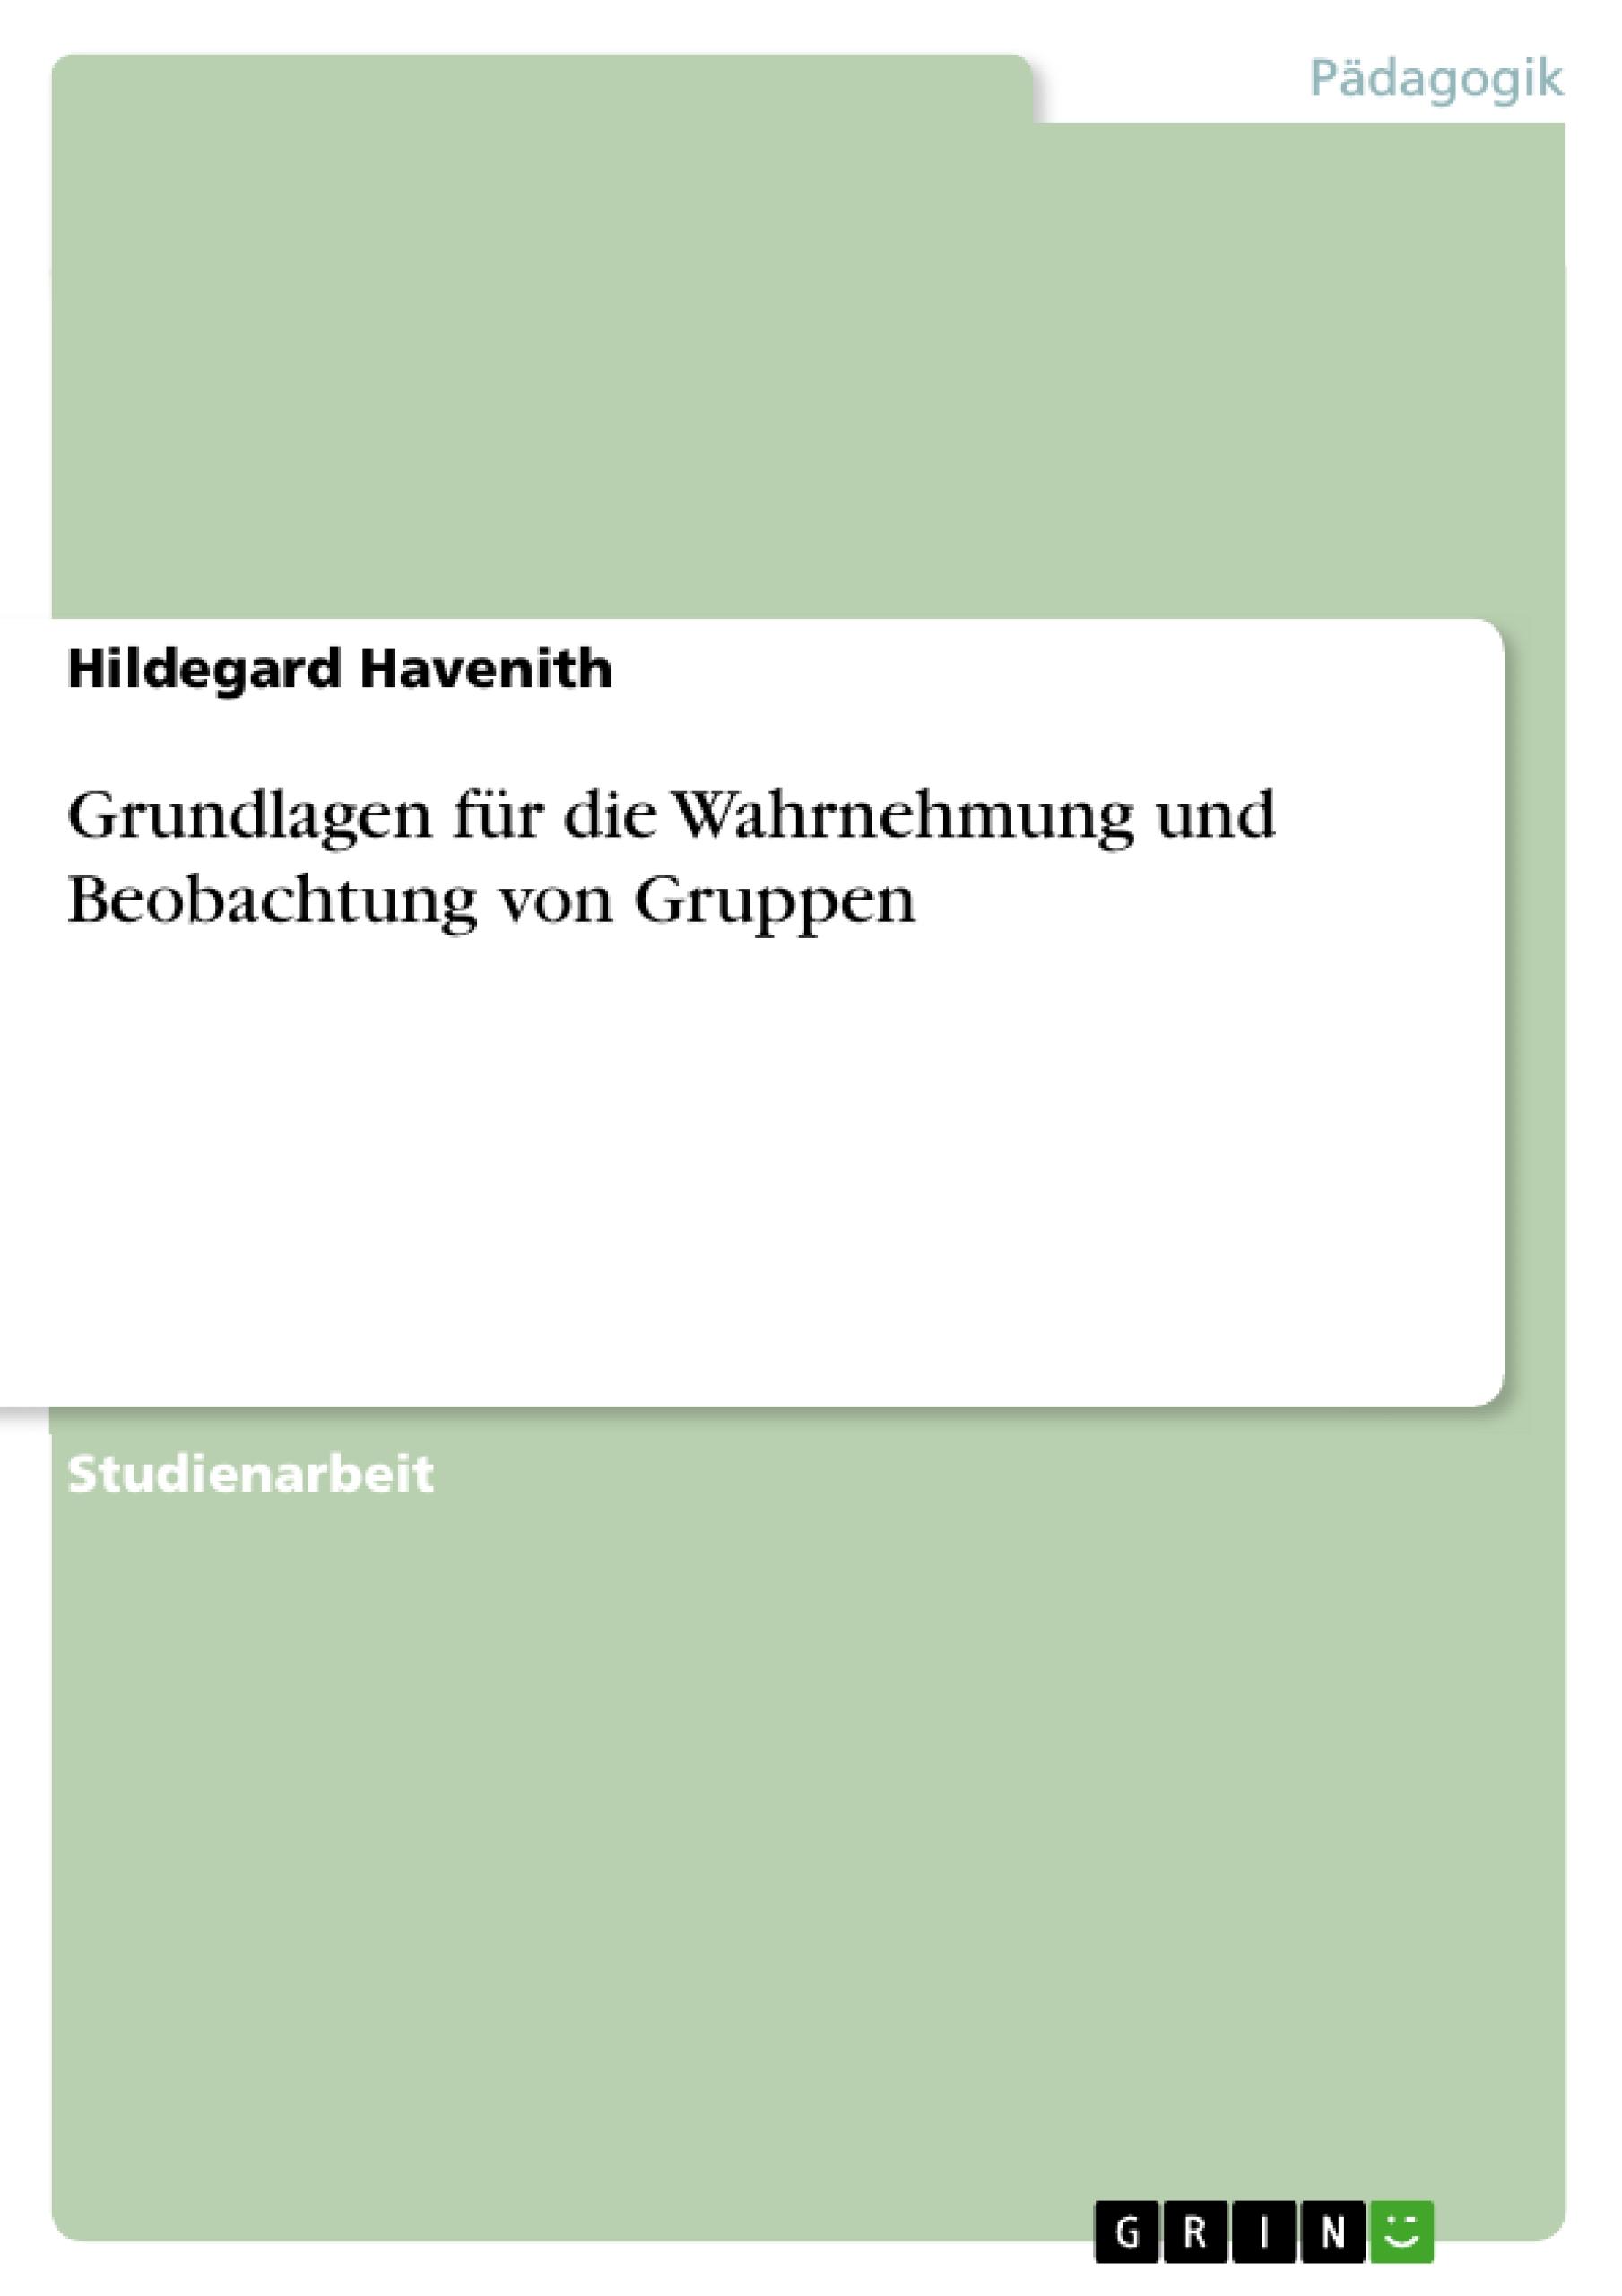 Grundlagen für die Wahrnehmung und Beobachtung von Gruppen / Hildegard Havenith / Taschenbuch / Paperback / 28 S. / Deutsch / 2007 / GRIN Verlag / EAN 9783638736954 - Havenith, Hildegard